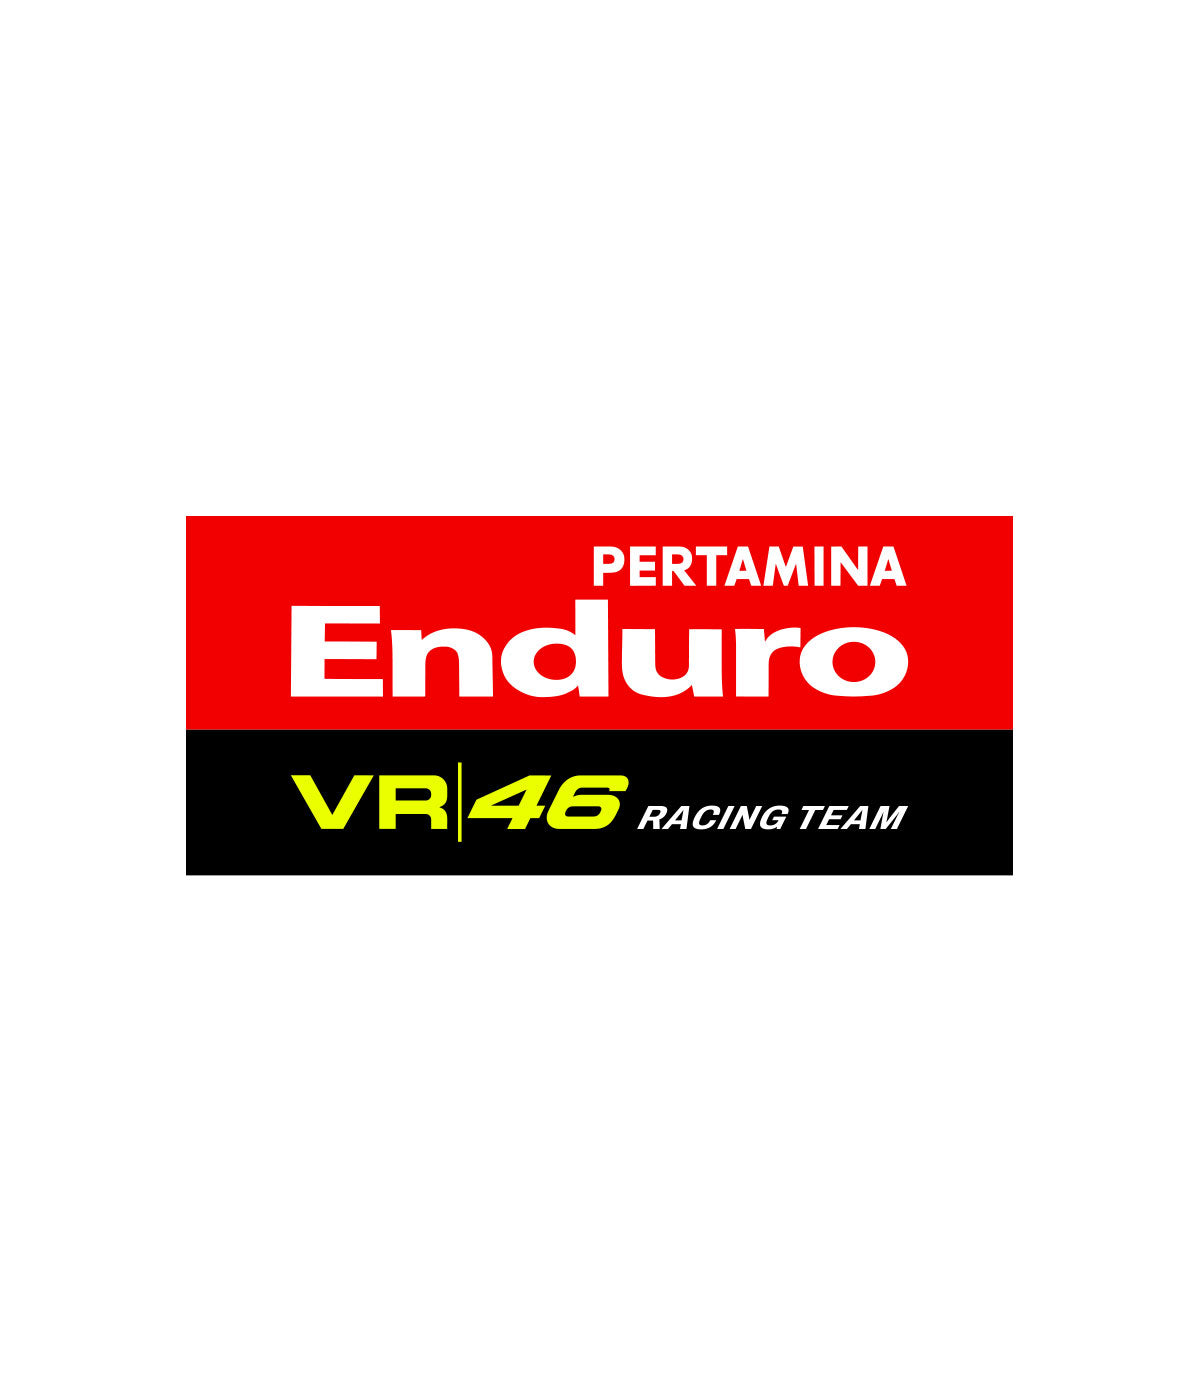 Pertamina Enduro VR46 Team